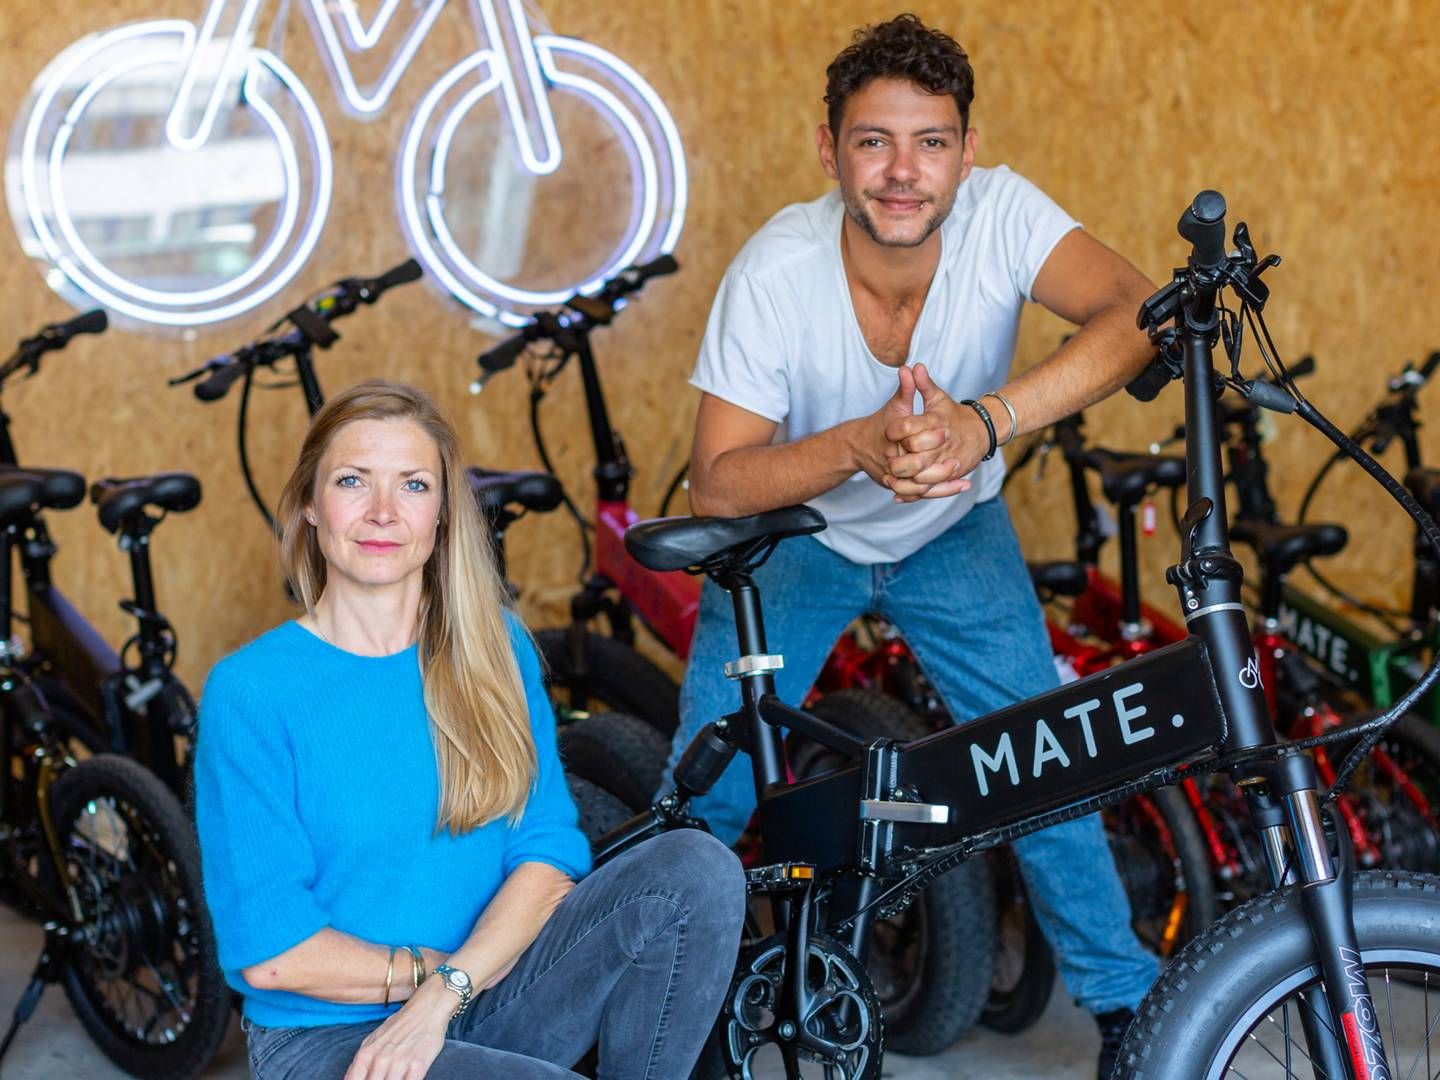 Søskendeparret Julie Kronstrøm Carton og Christian Adel Michael står bag Mate Bike. | Foto: PRMateBike